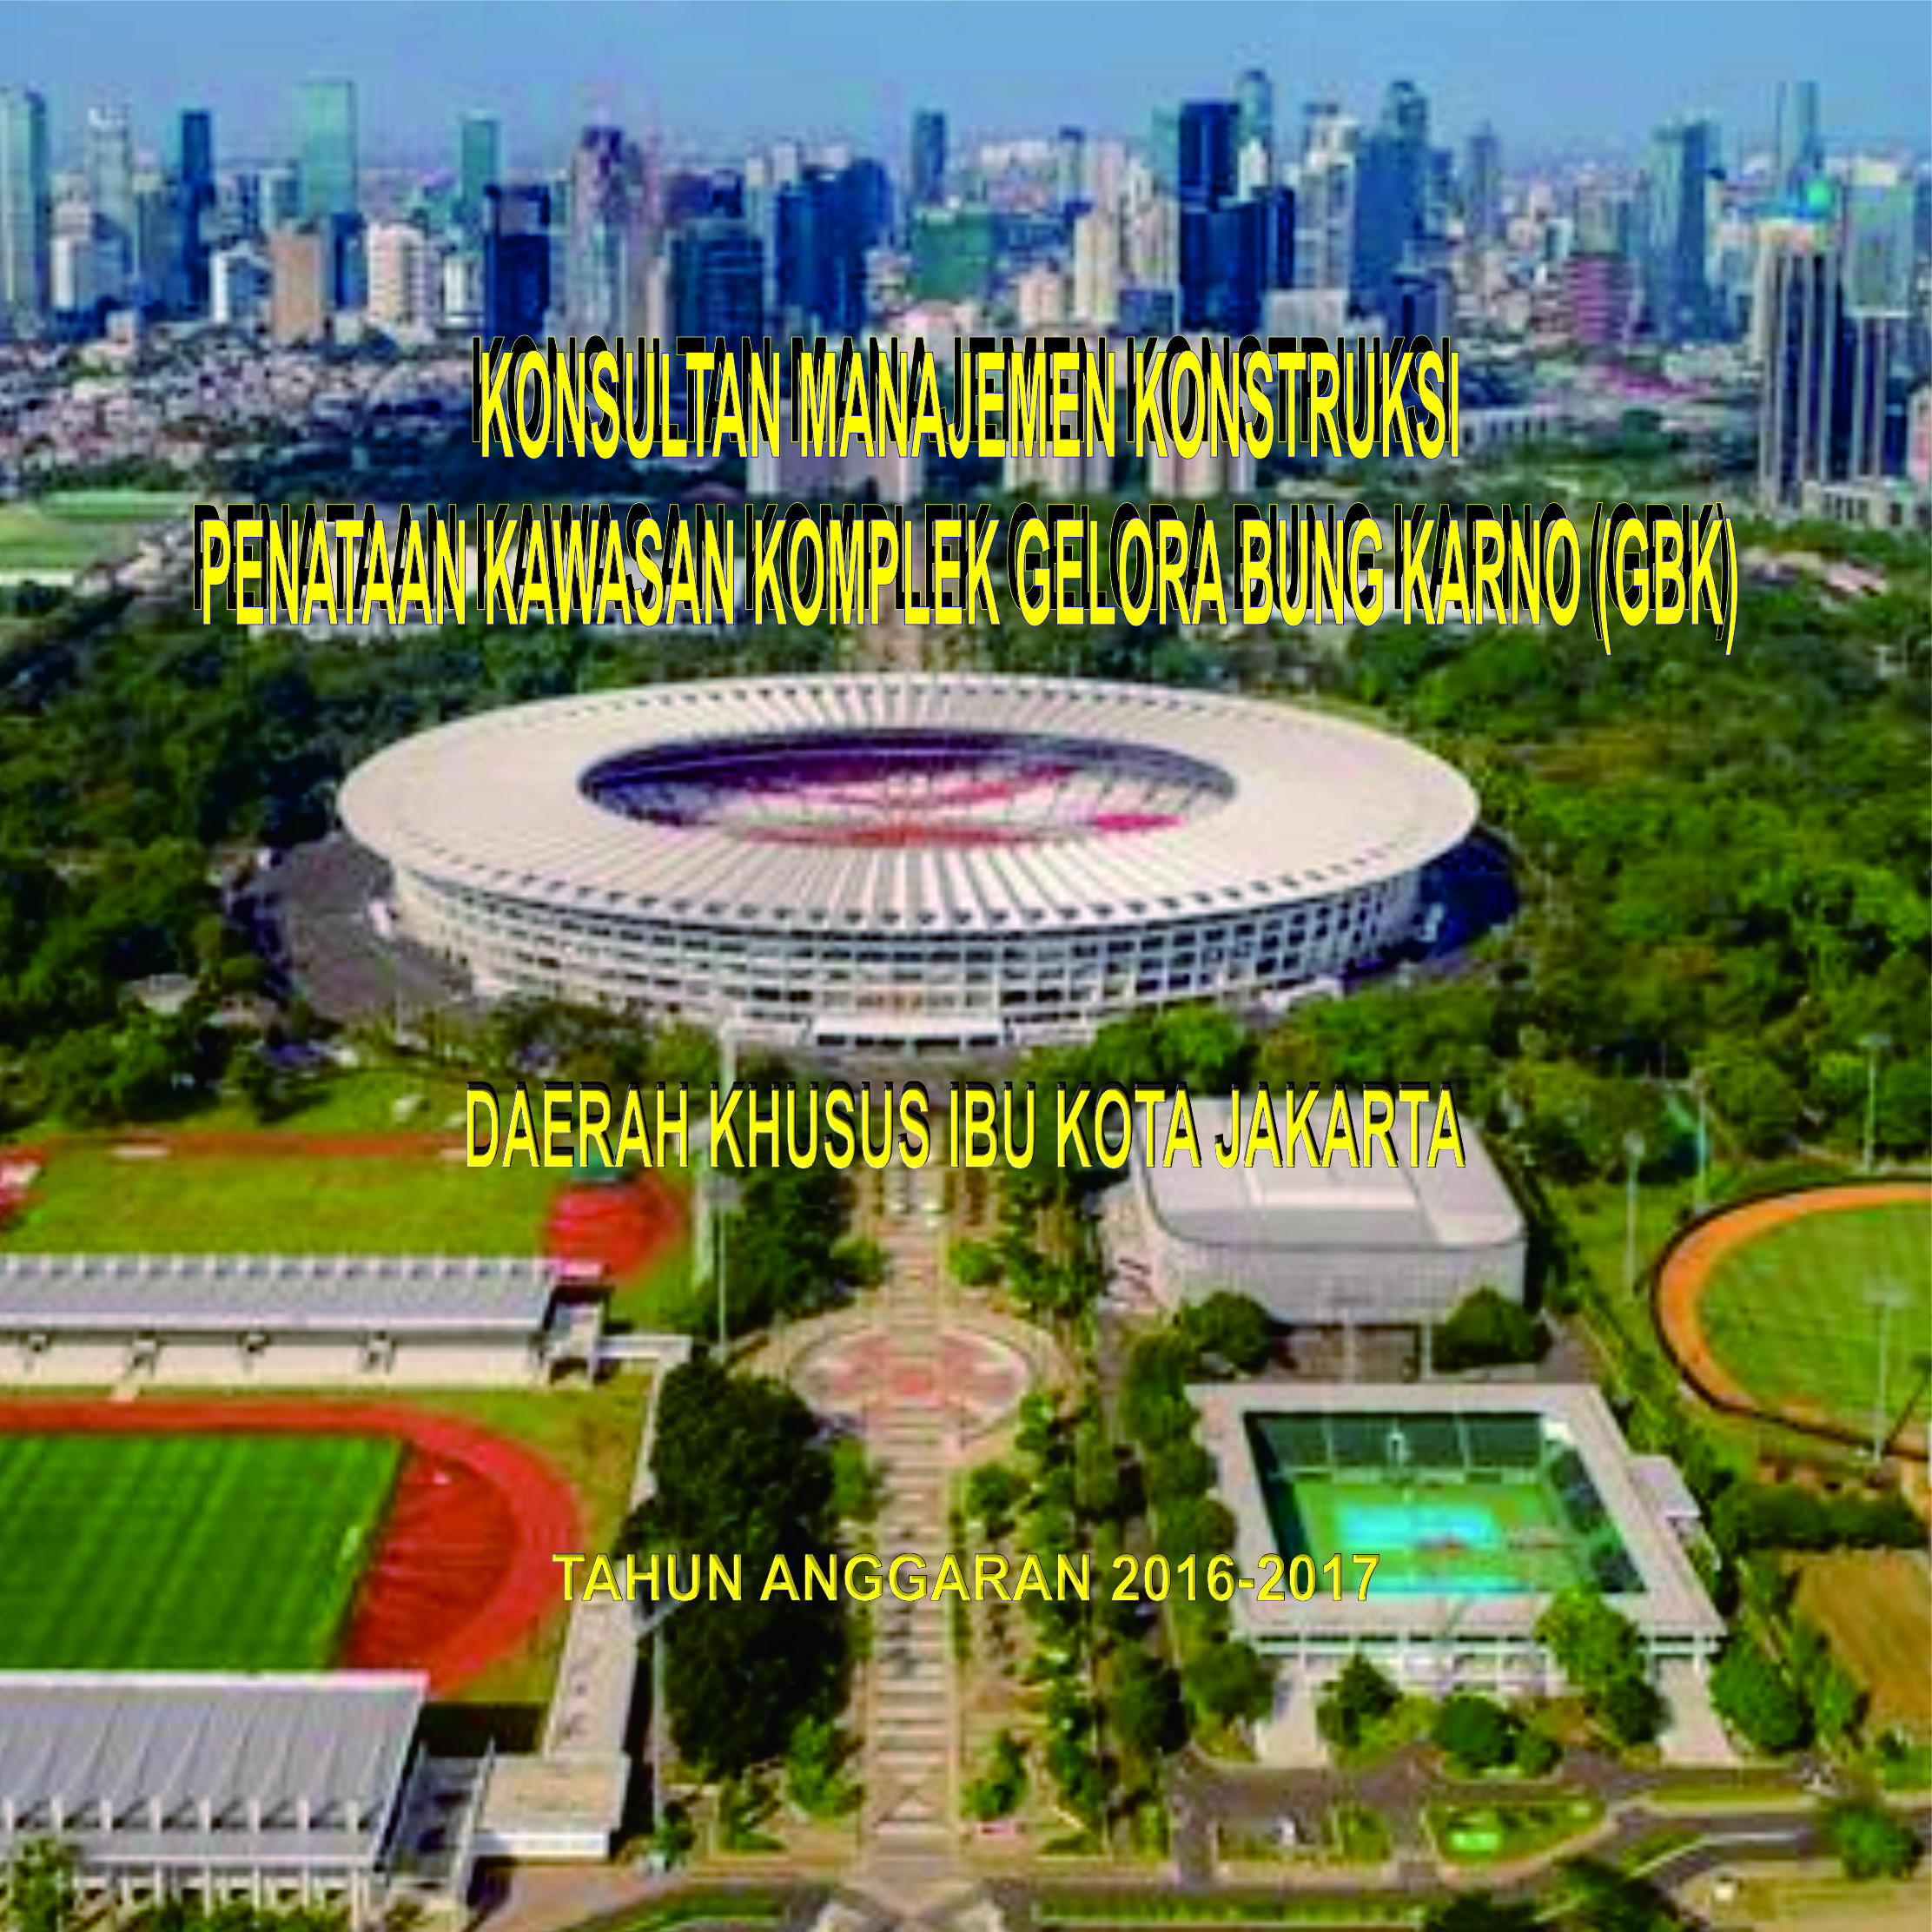 image-Konsultan Manajemen Konstruksi Penataan Kawasan Komplek Gelora Bung Karno (GBK)